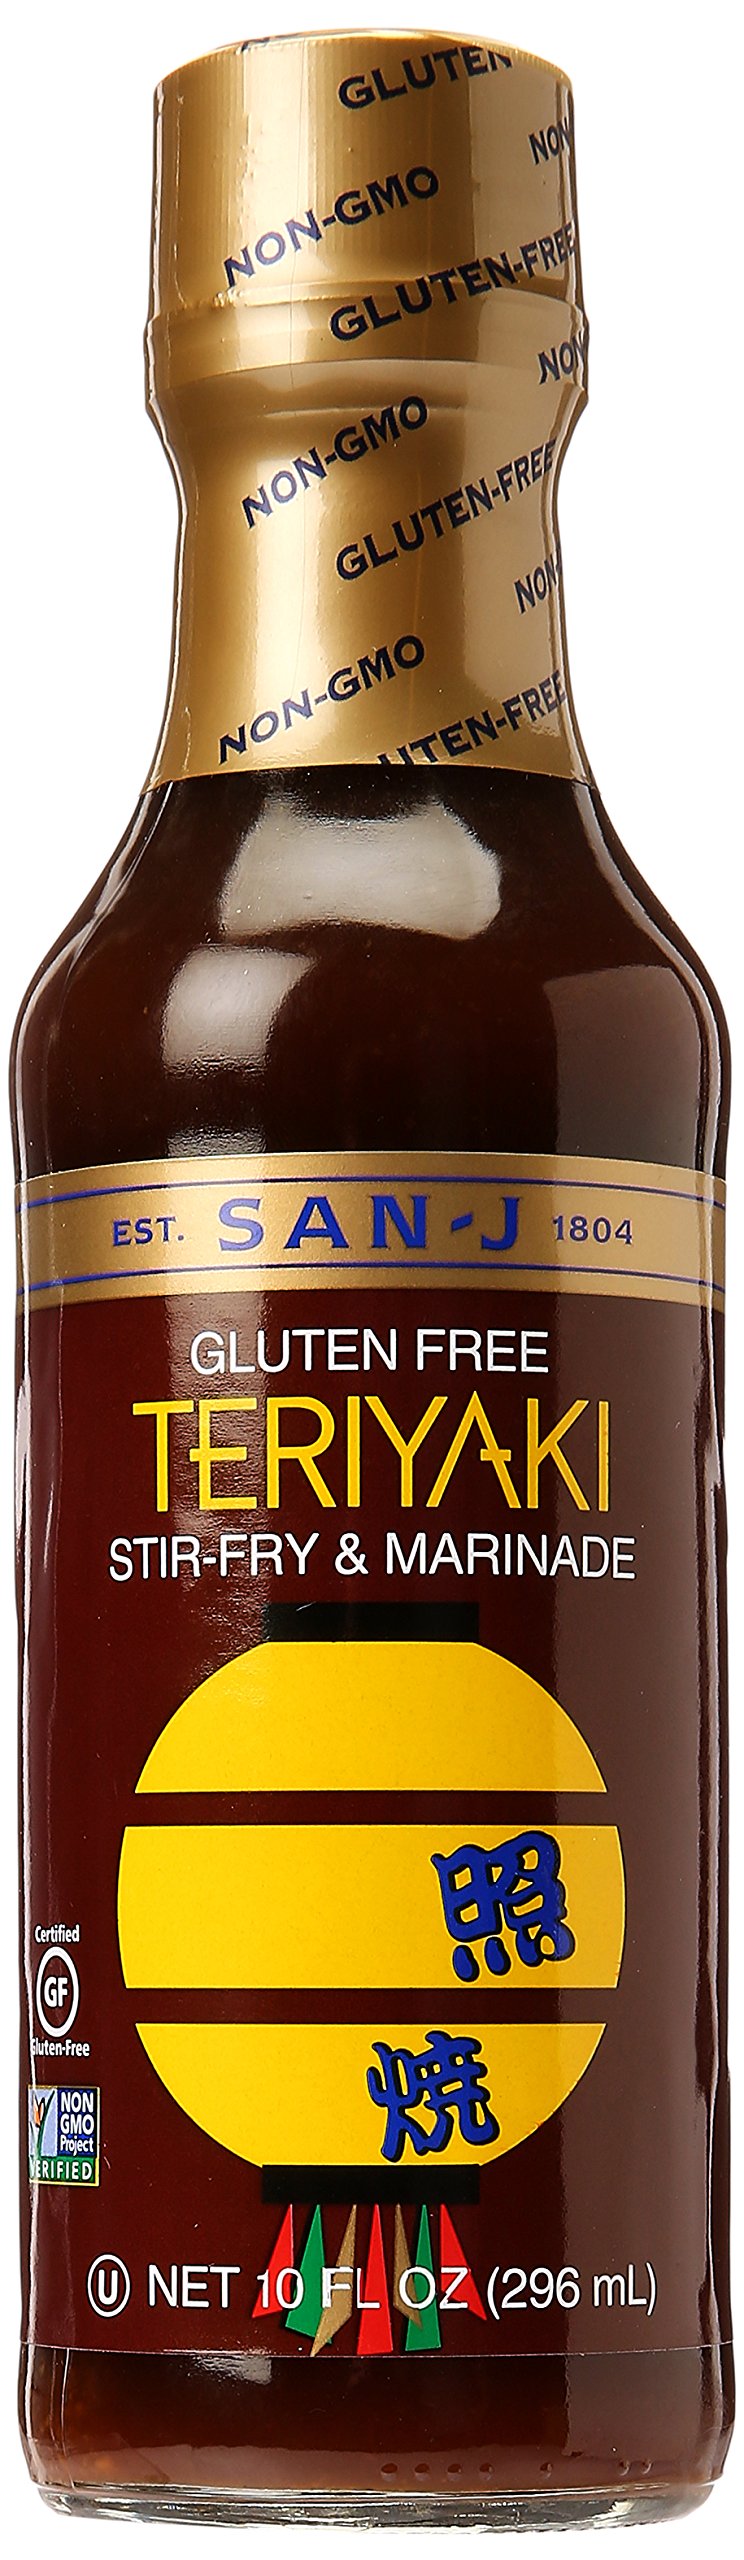 San-J Teriyaki Sauce